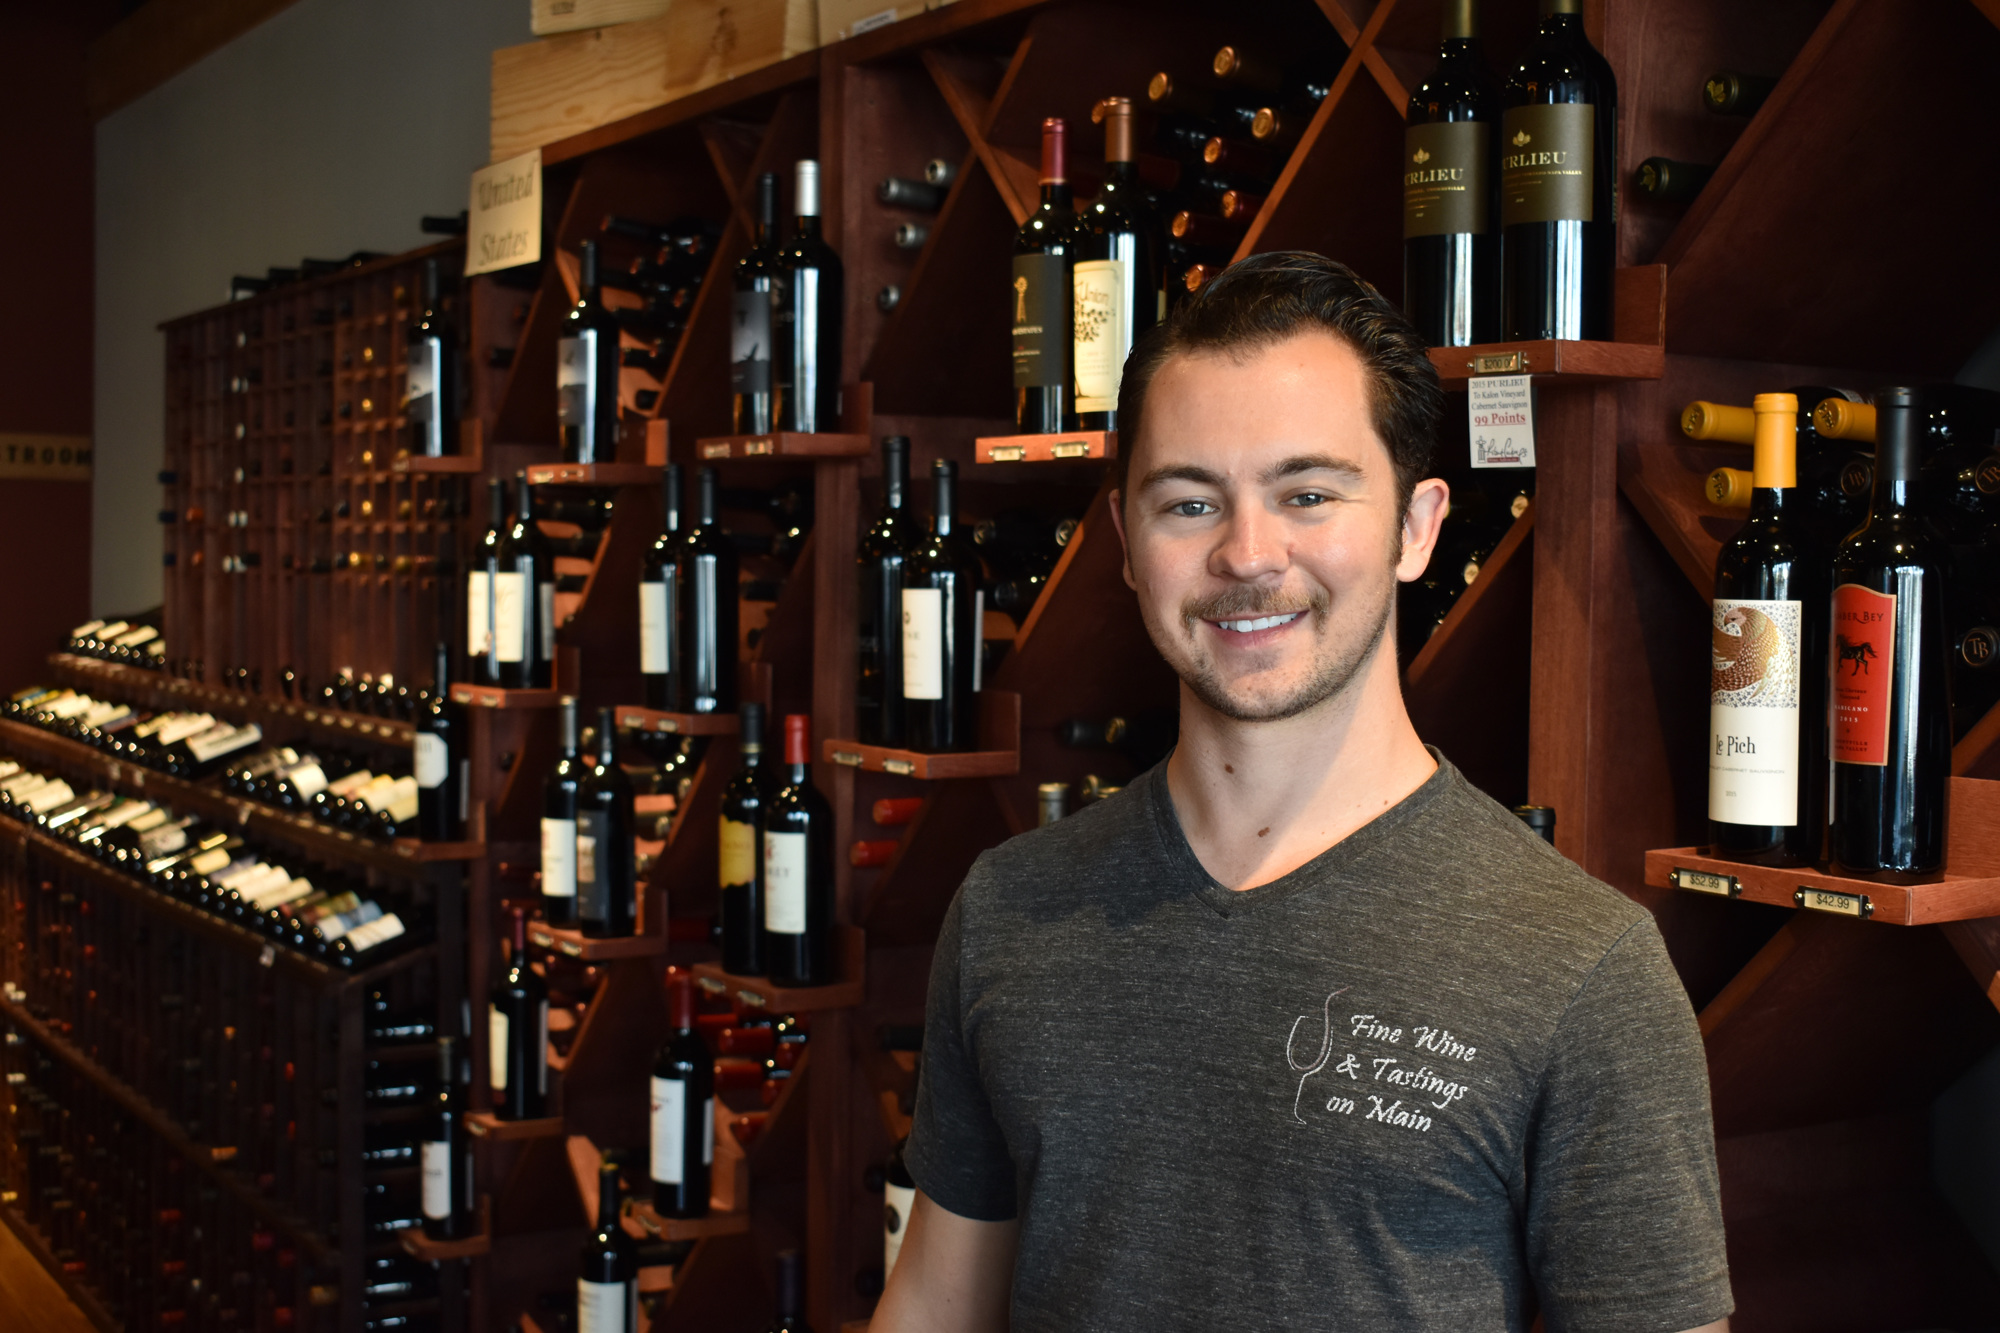 Scott Shortt owns Fine Wine & Tastings on Main. Photo by Niki Kottmann